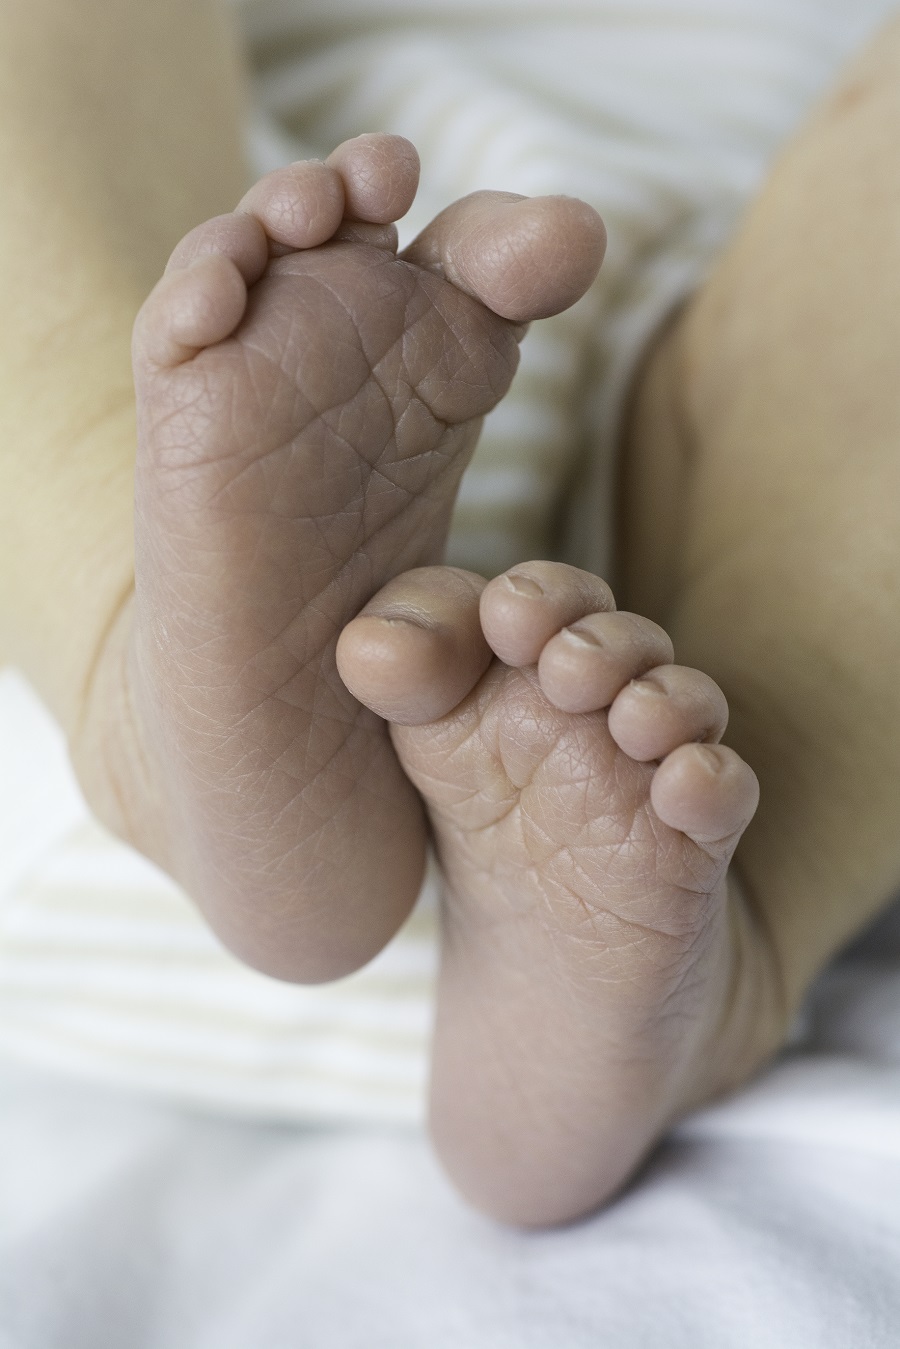 כפות הרגליים של התינוקת החדשה